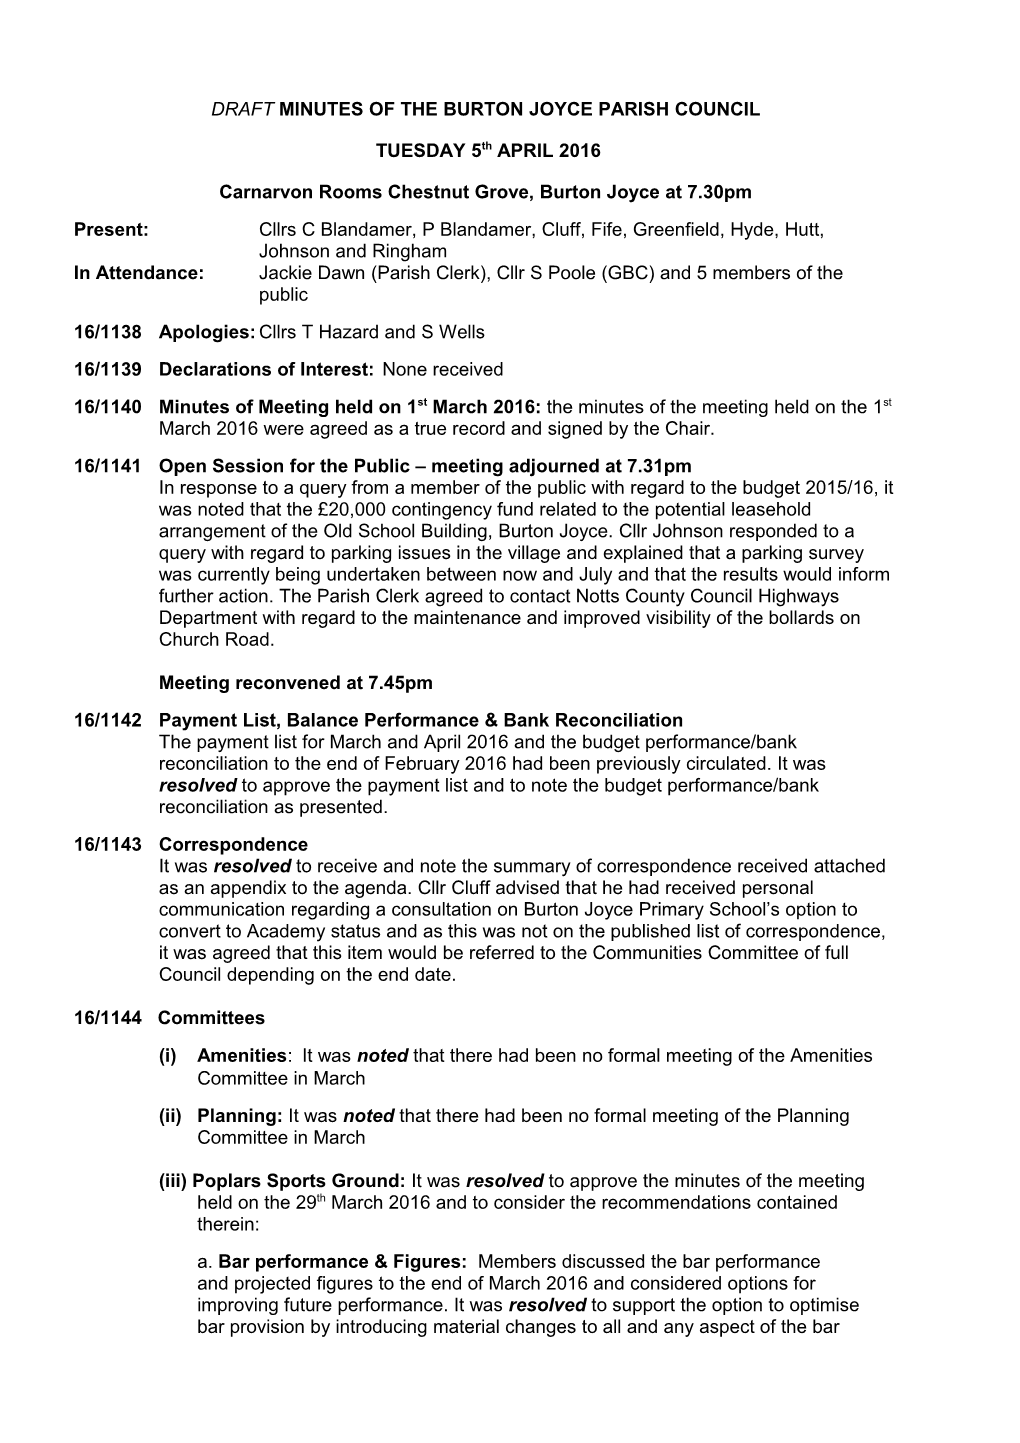 Draft Minutes of the Burton Joyce Parish Council